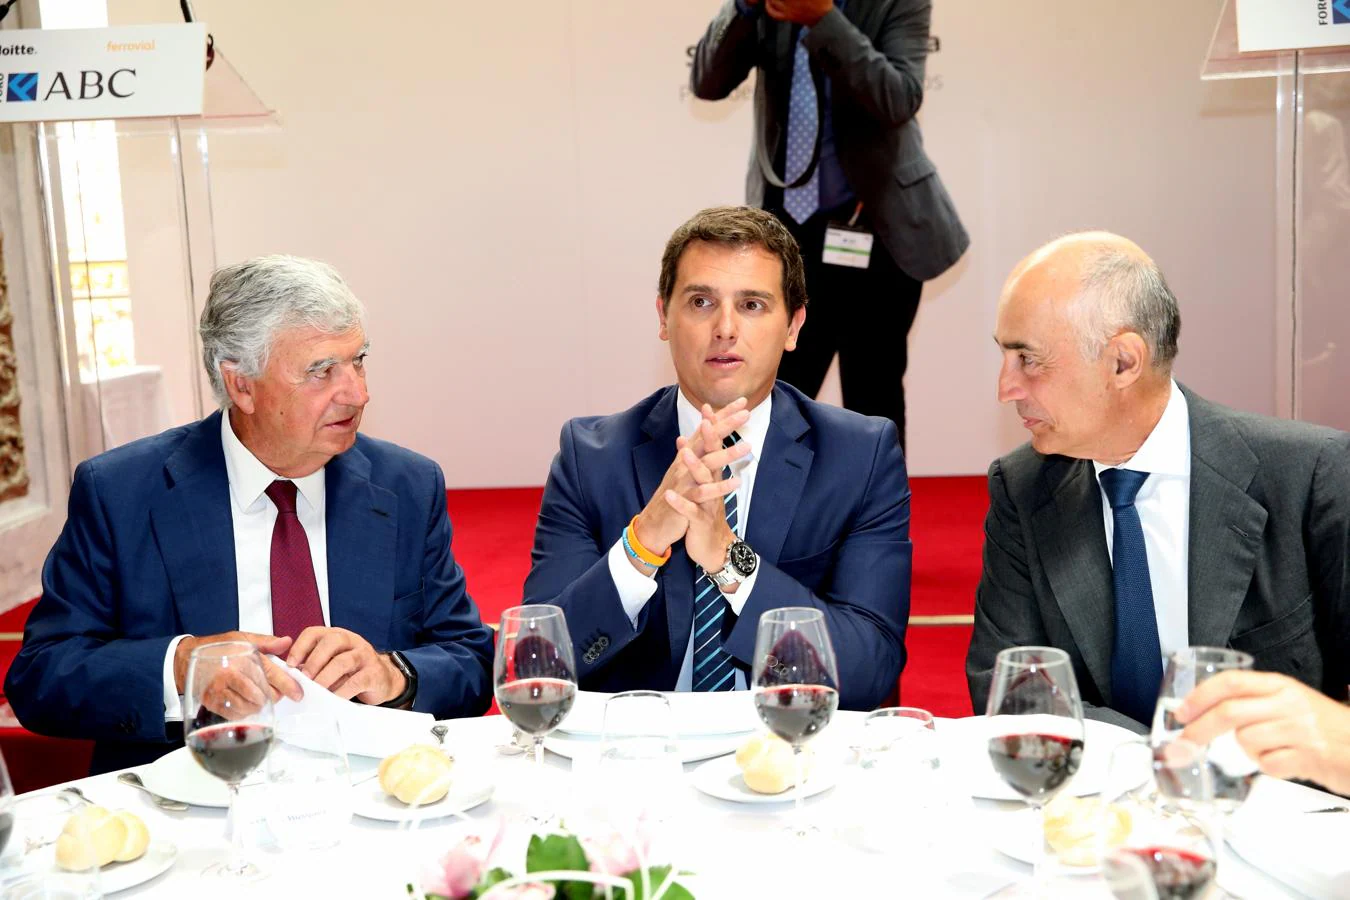 Rafael del Pino, presidente de Ferrovial (derecha), y Santiago Bergareche, presidente de Vocento (izquierda), hablan con el presidente de Ciudadanos durante el almuerzo en el Foro de ABC. 